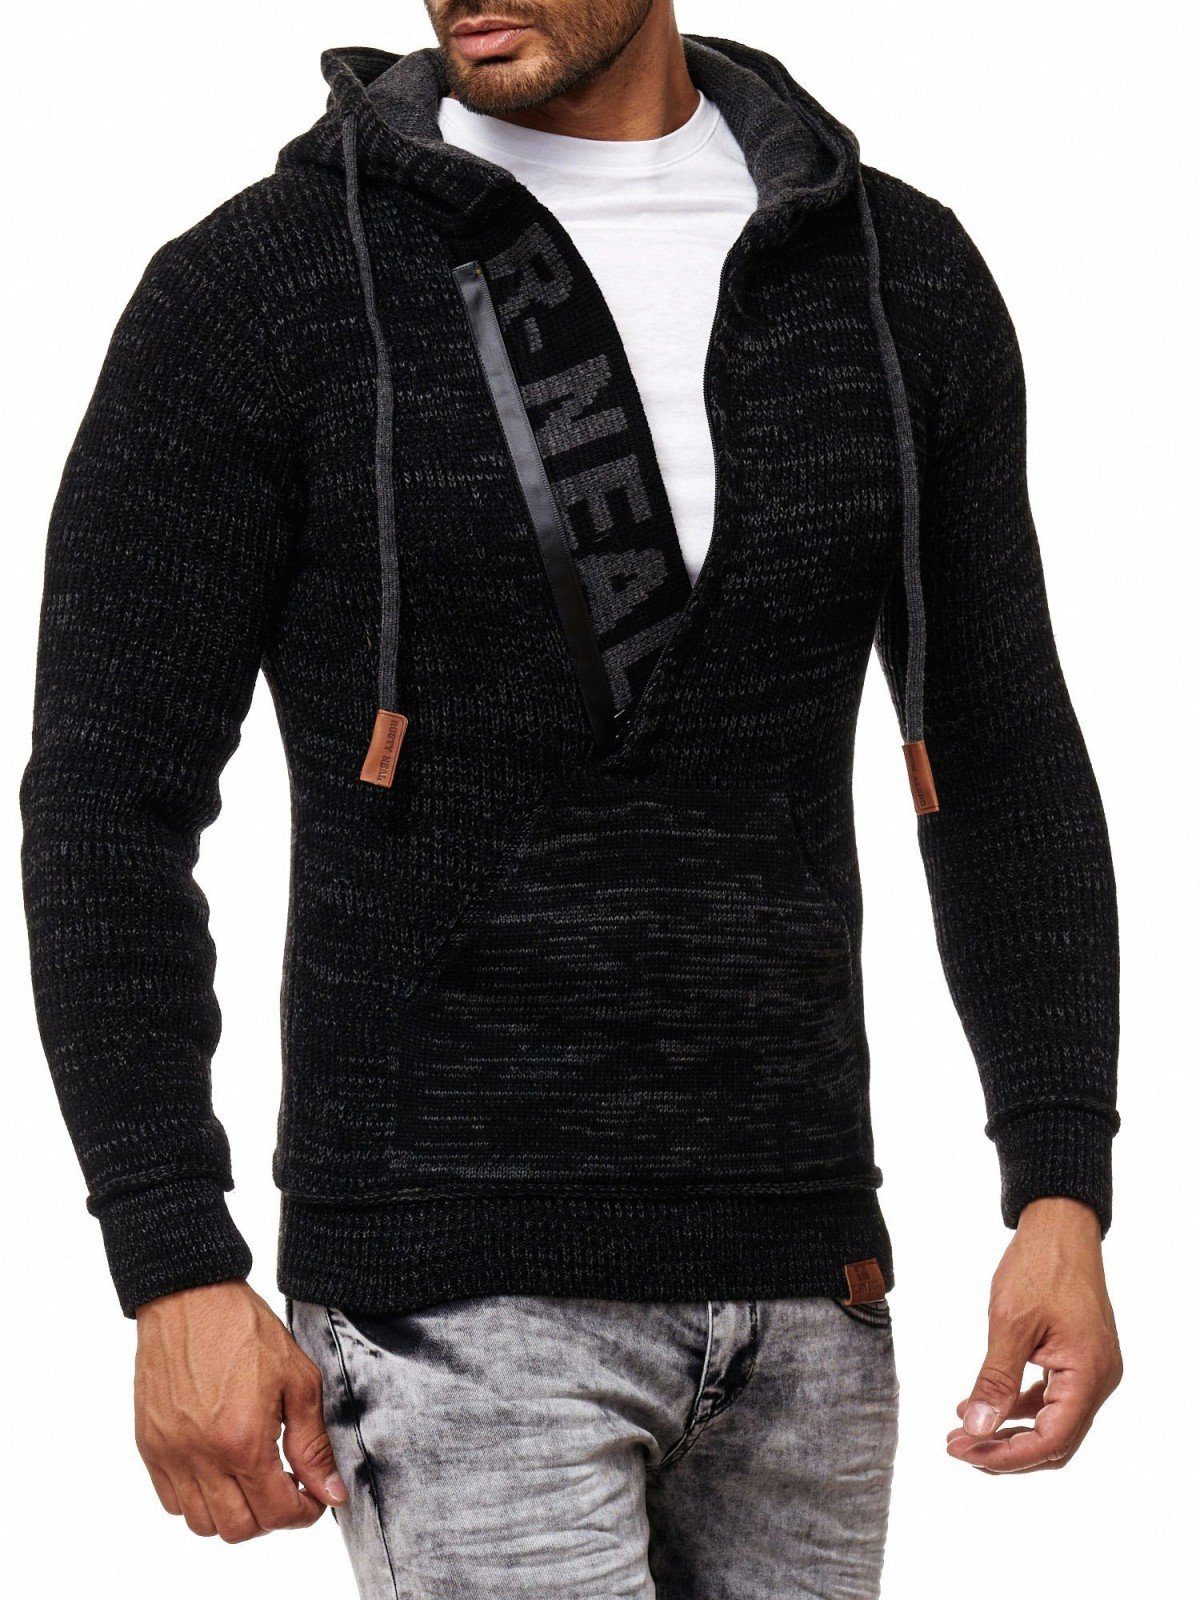 Rusty Neal Kapuzensweatshirt mit coolem Schriftzug schwarz, anthrazit